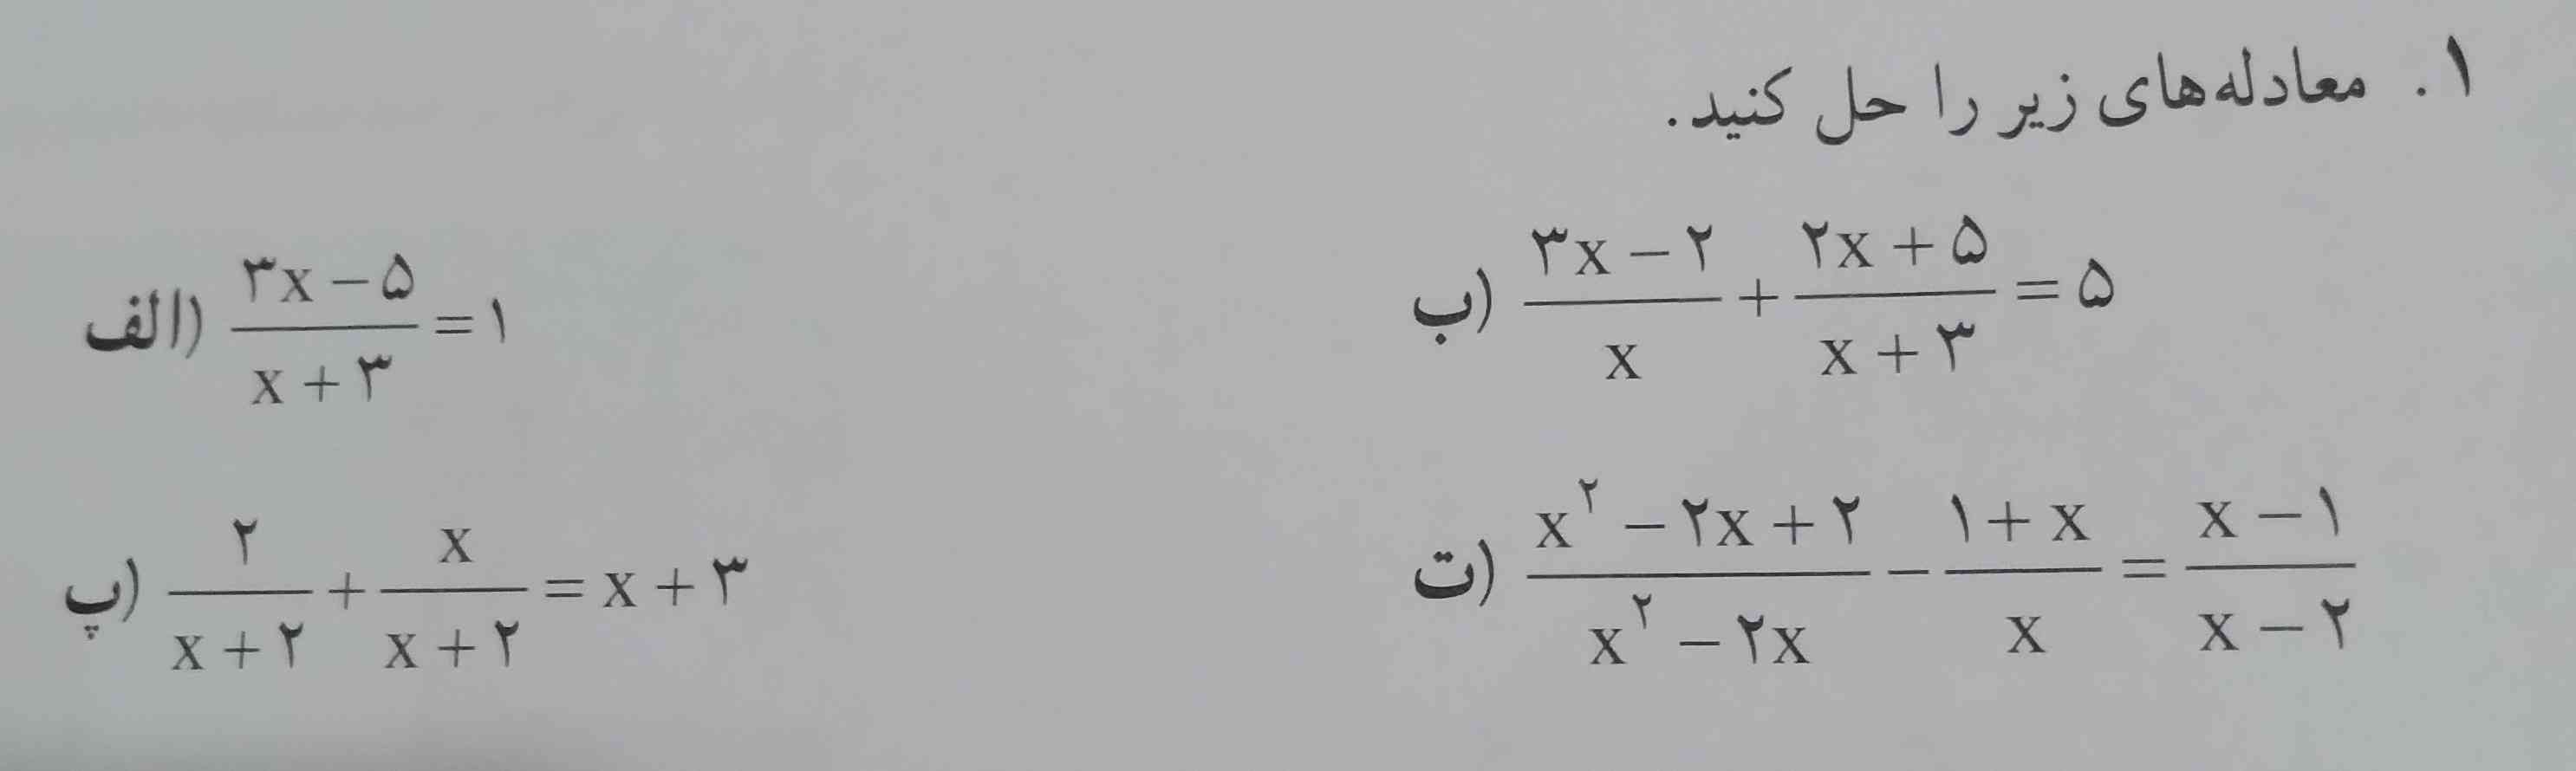 سلام این معادله های زیر را توضیح میدین؟ 

(معرکه میدم) 